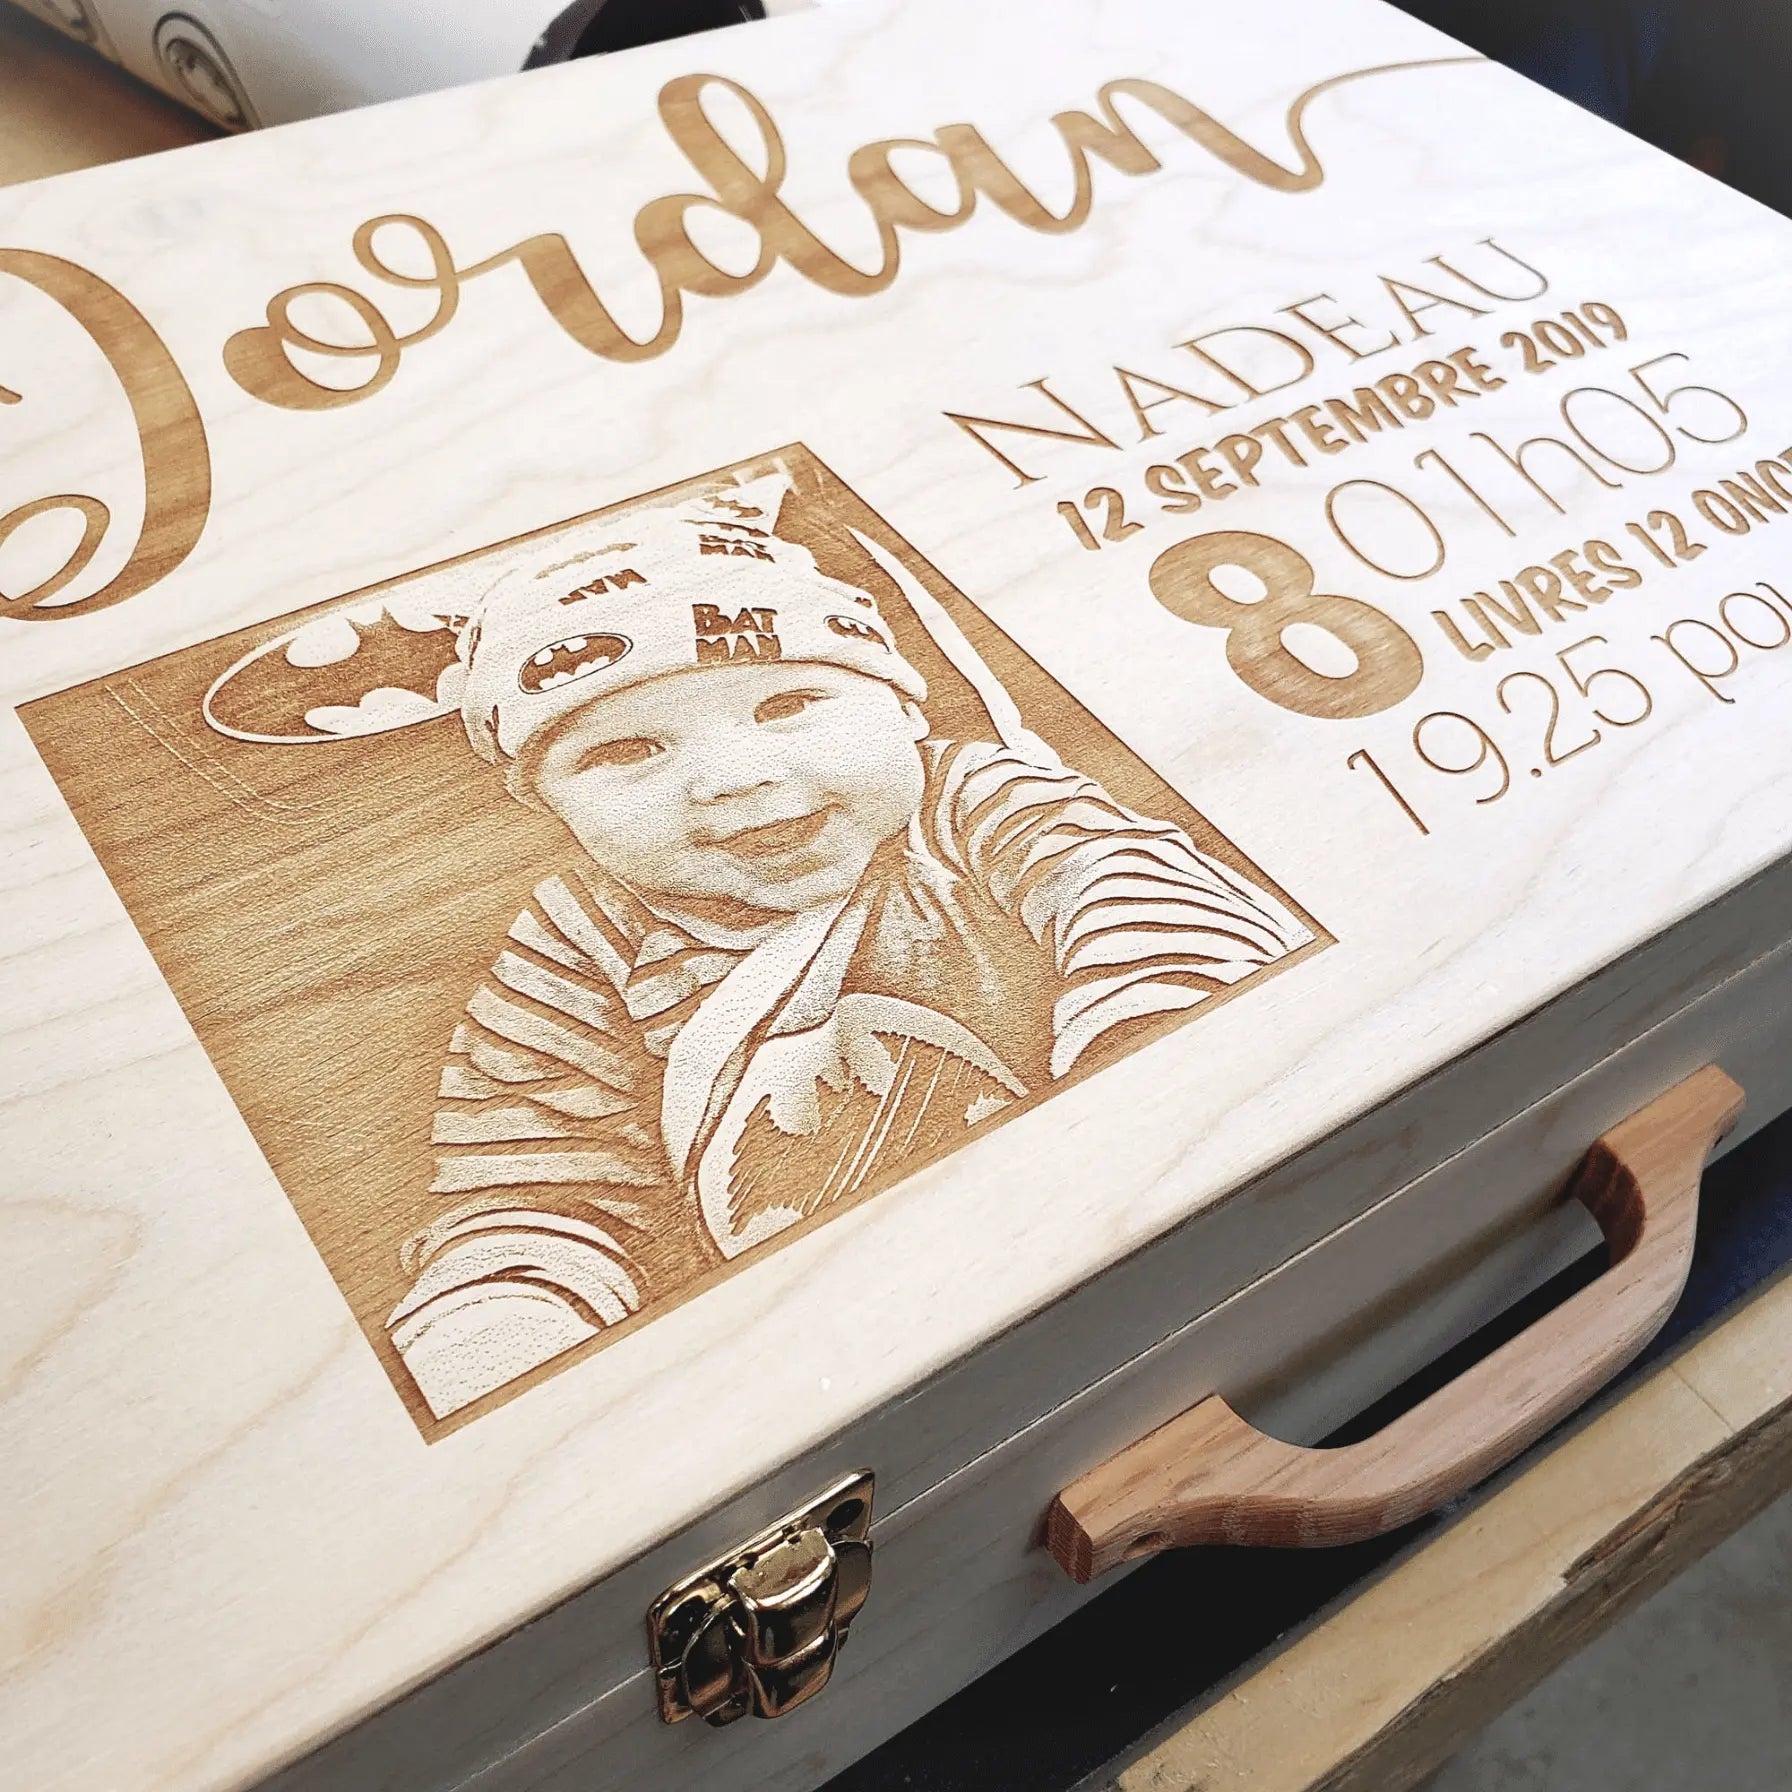 Souvenirs du Hangar, Valise de souvenirs de naissance en bois de fabrication artisanale québécoise et personnalisable avec une photographie de l'enfant